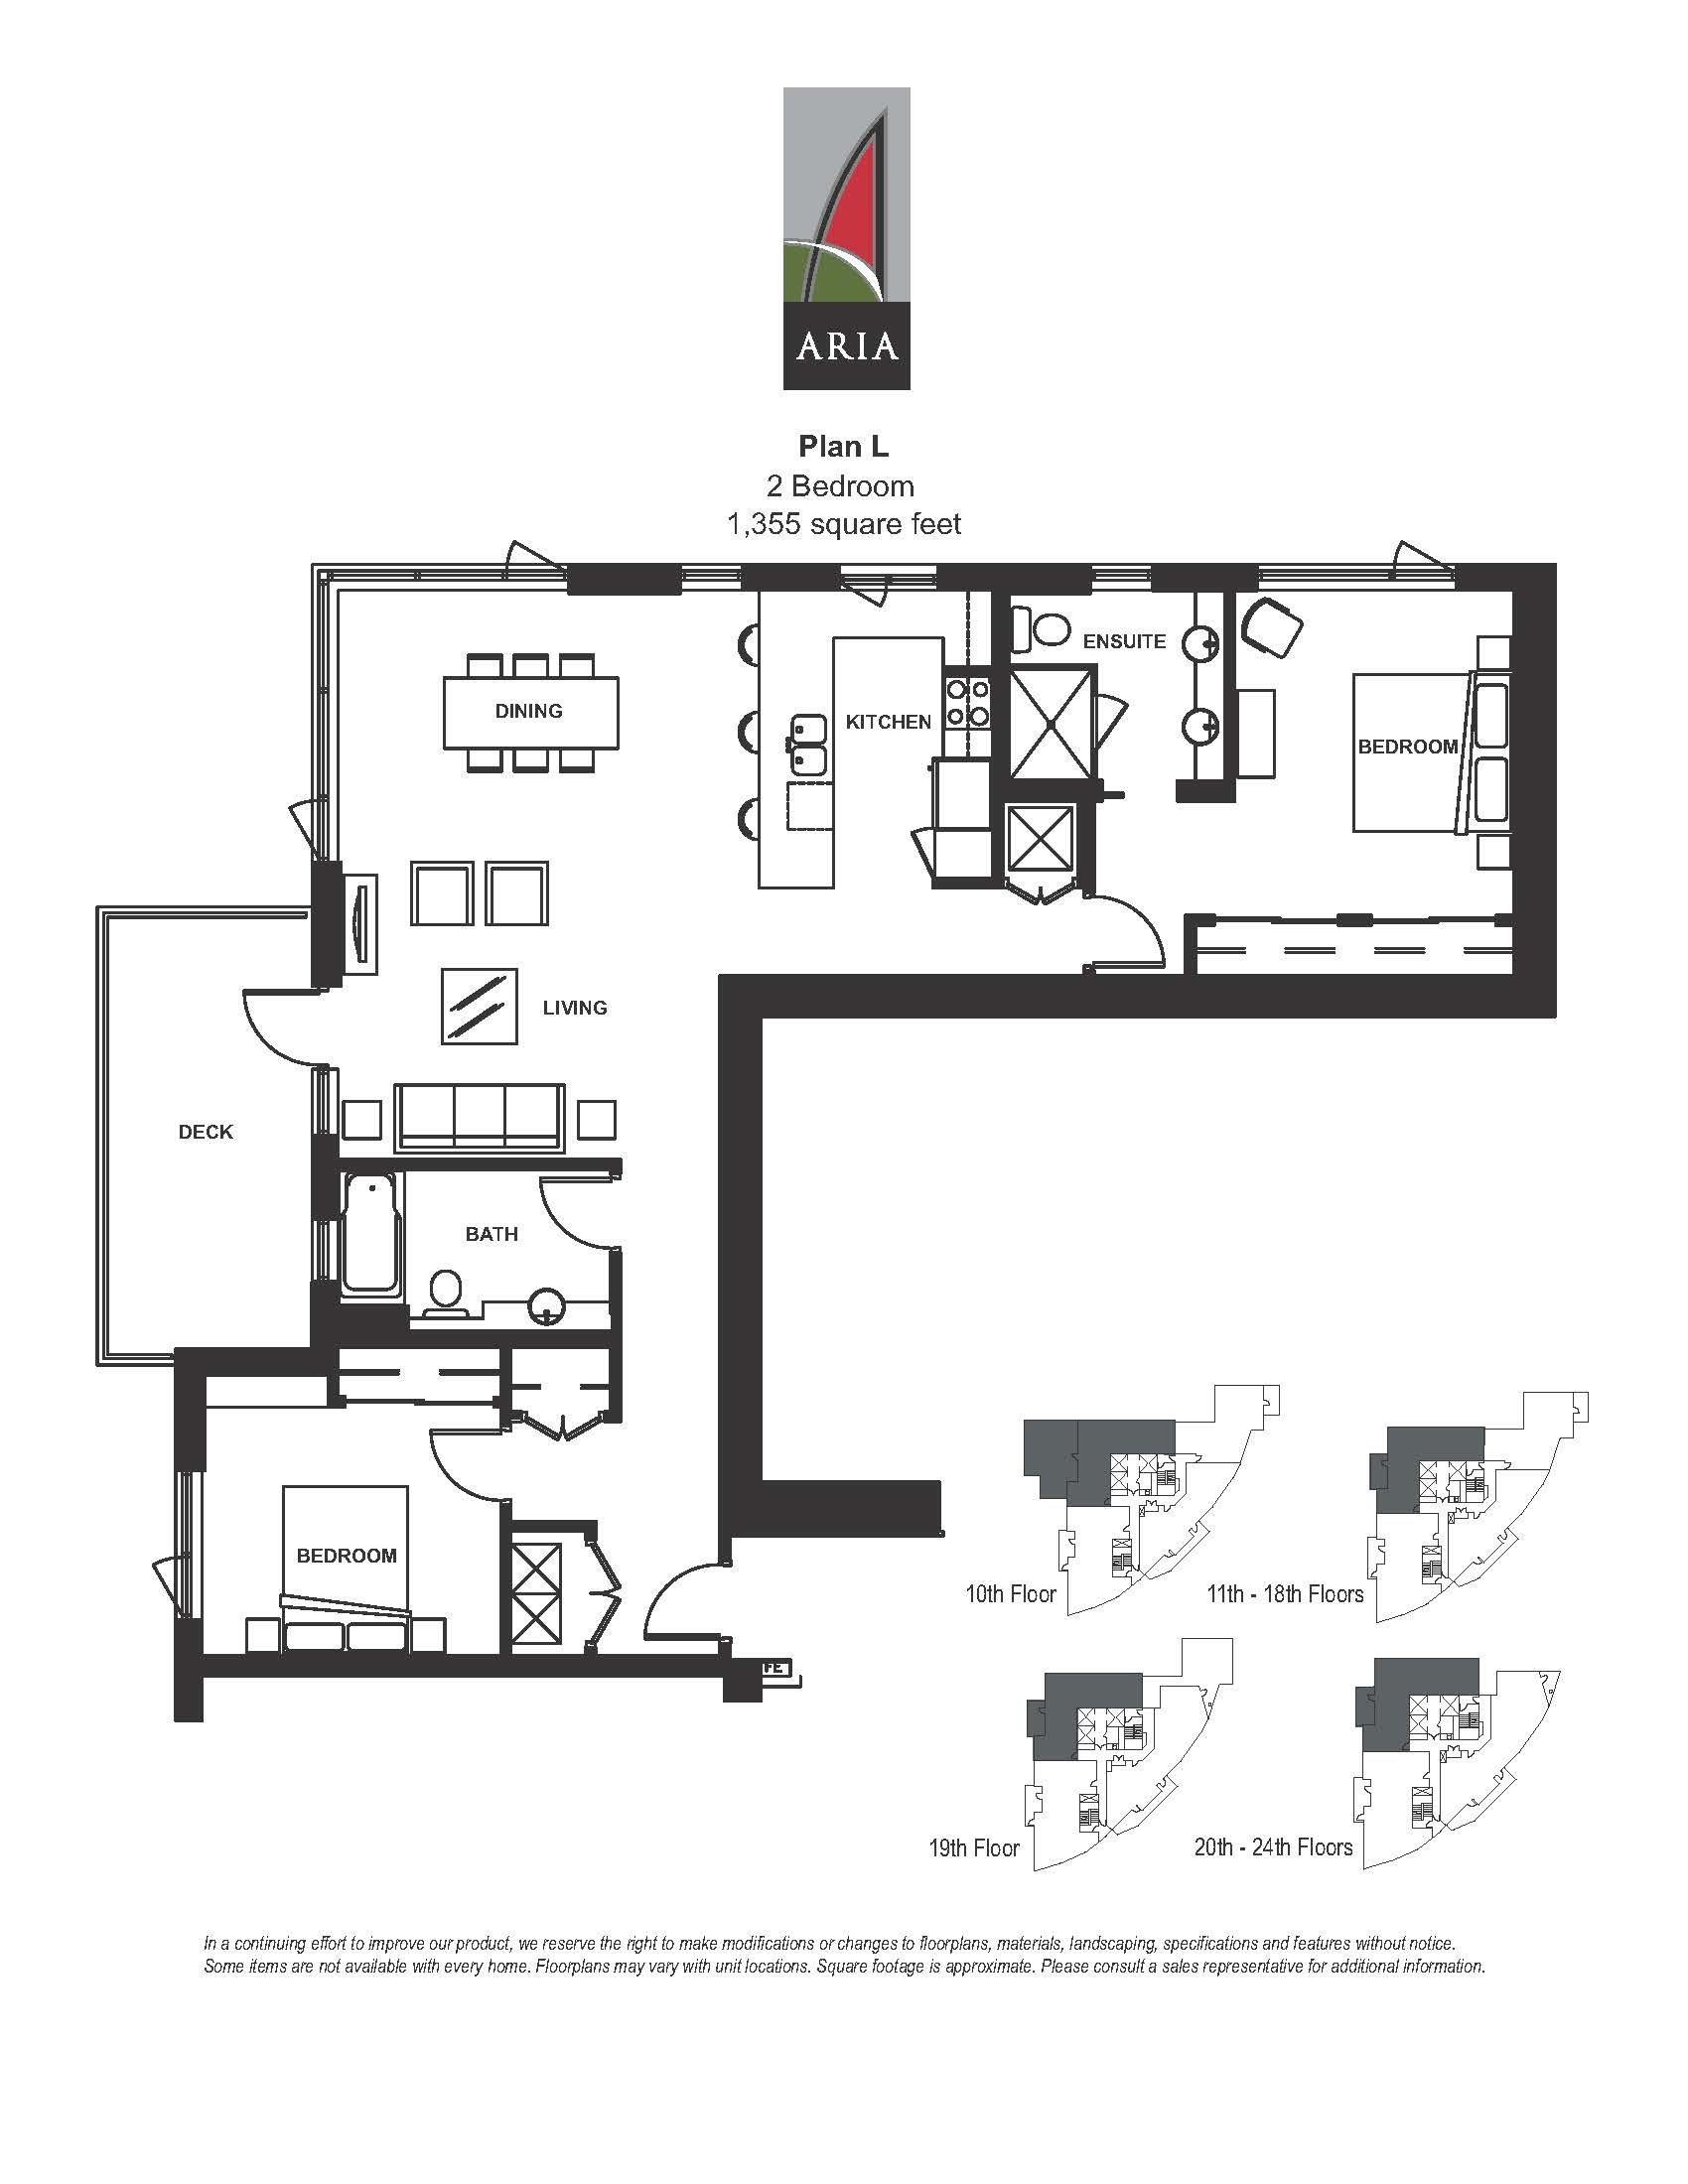 Aria 2 Bedroom – Plan L